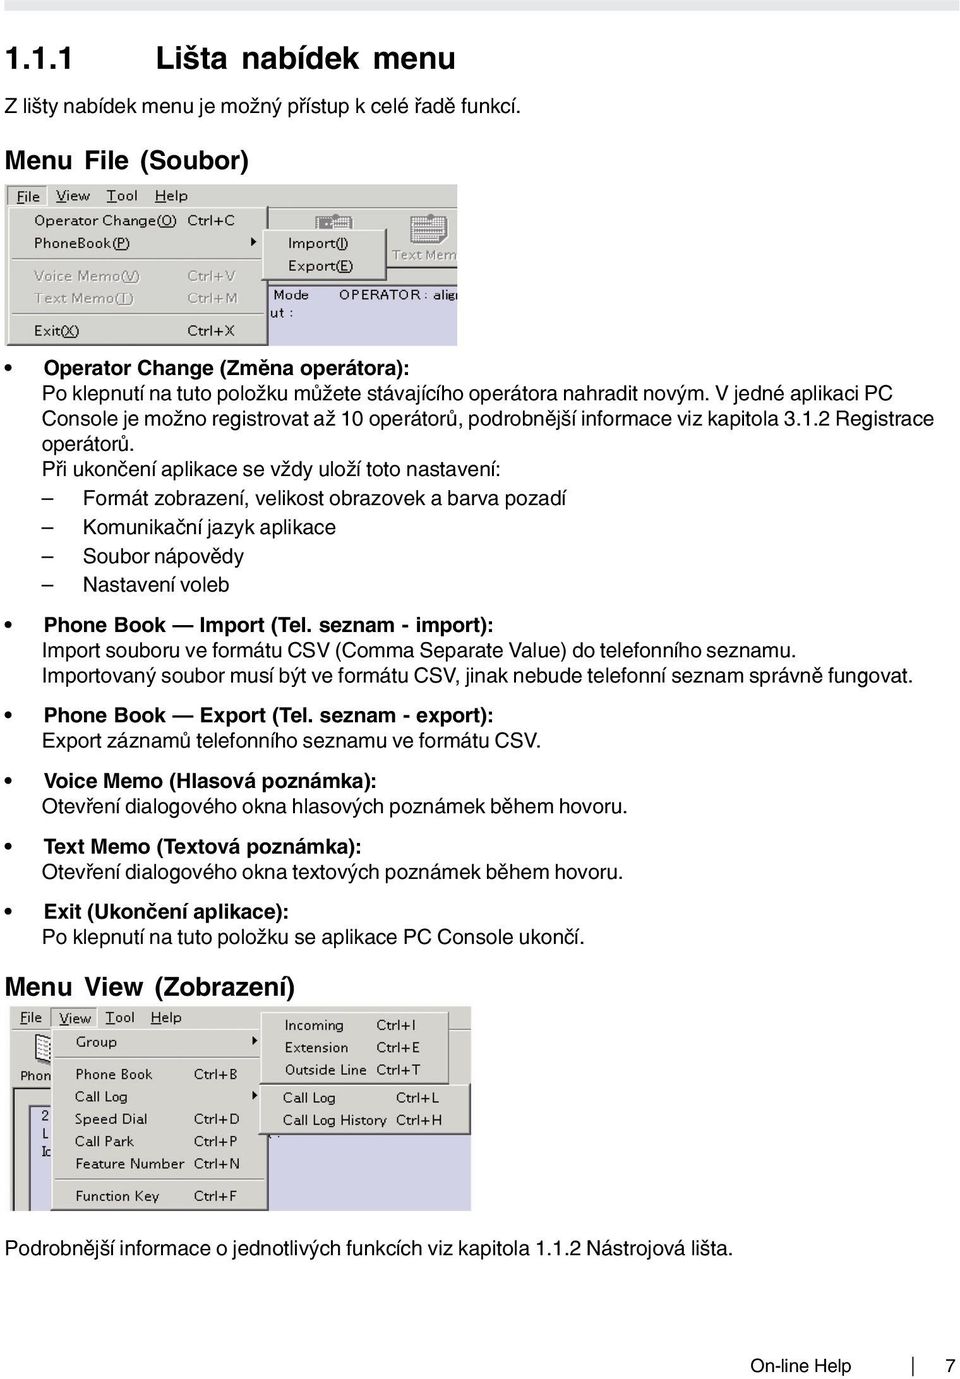 V jedné aplikaci PC Console je možno registrovat až 10 operátorů, podrobnější informace viz kapitola 3.1.2 Registrace operátorů.